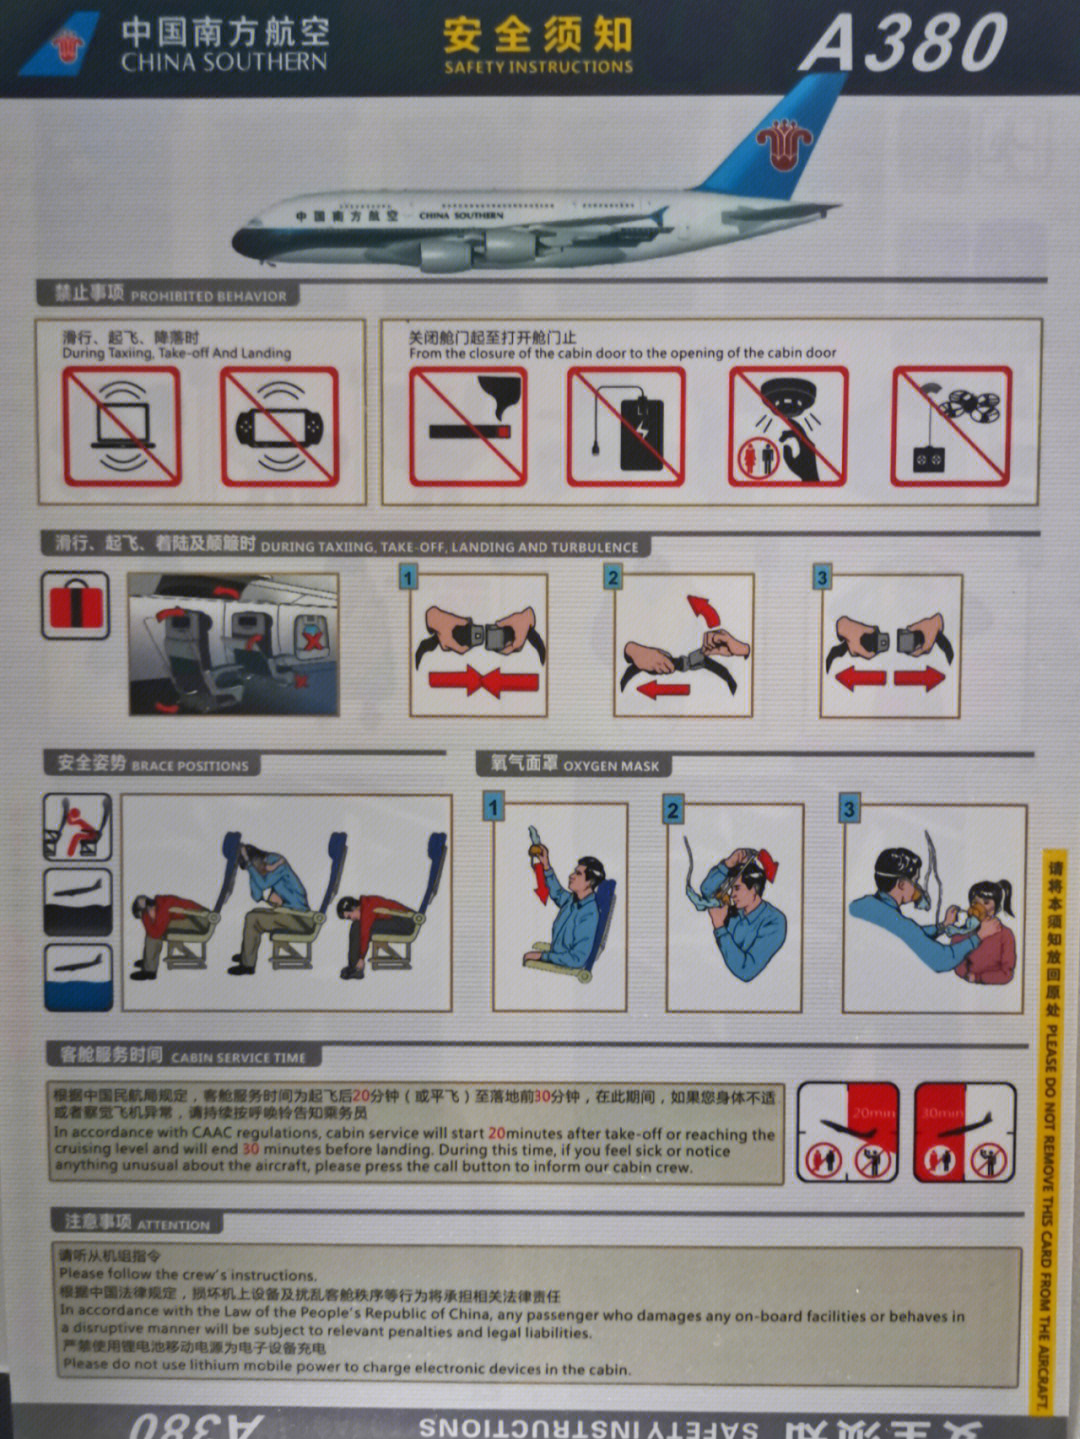 坐飞机前你会阅读安全须知吗